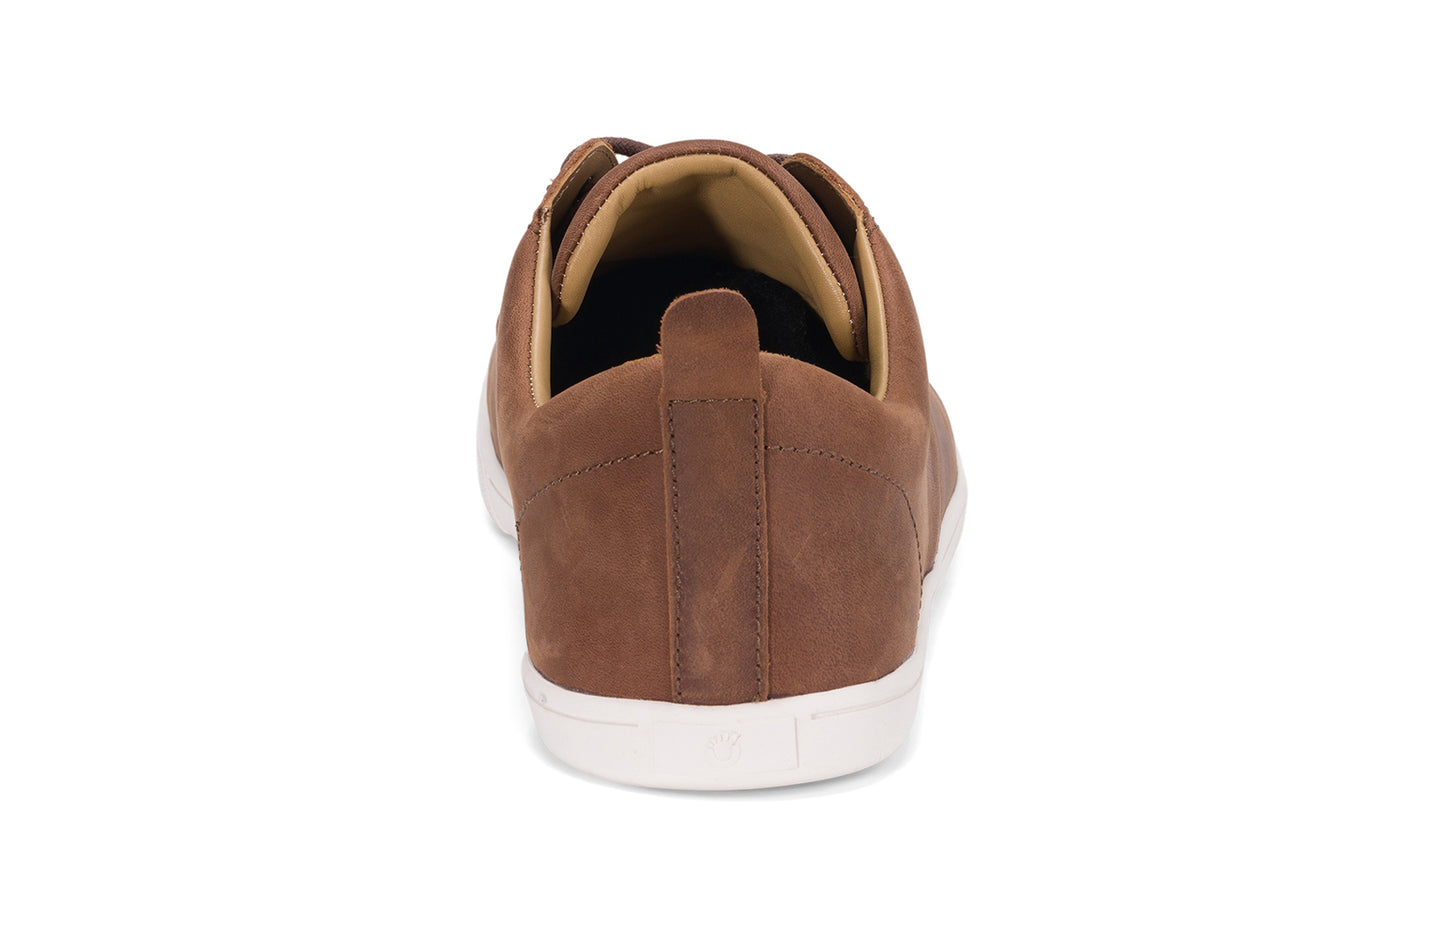 Xero Shoes - Glenn - Brown - Men's